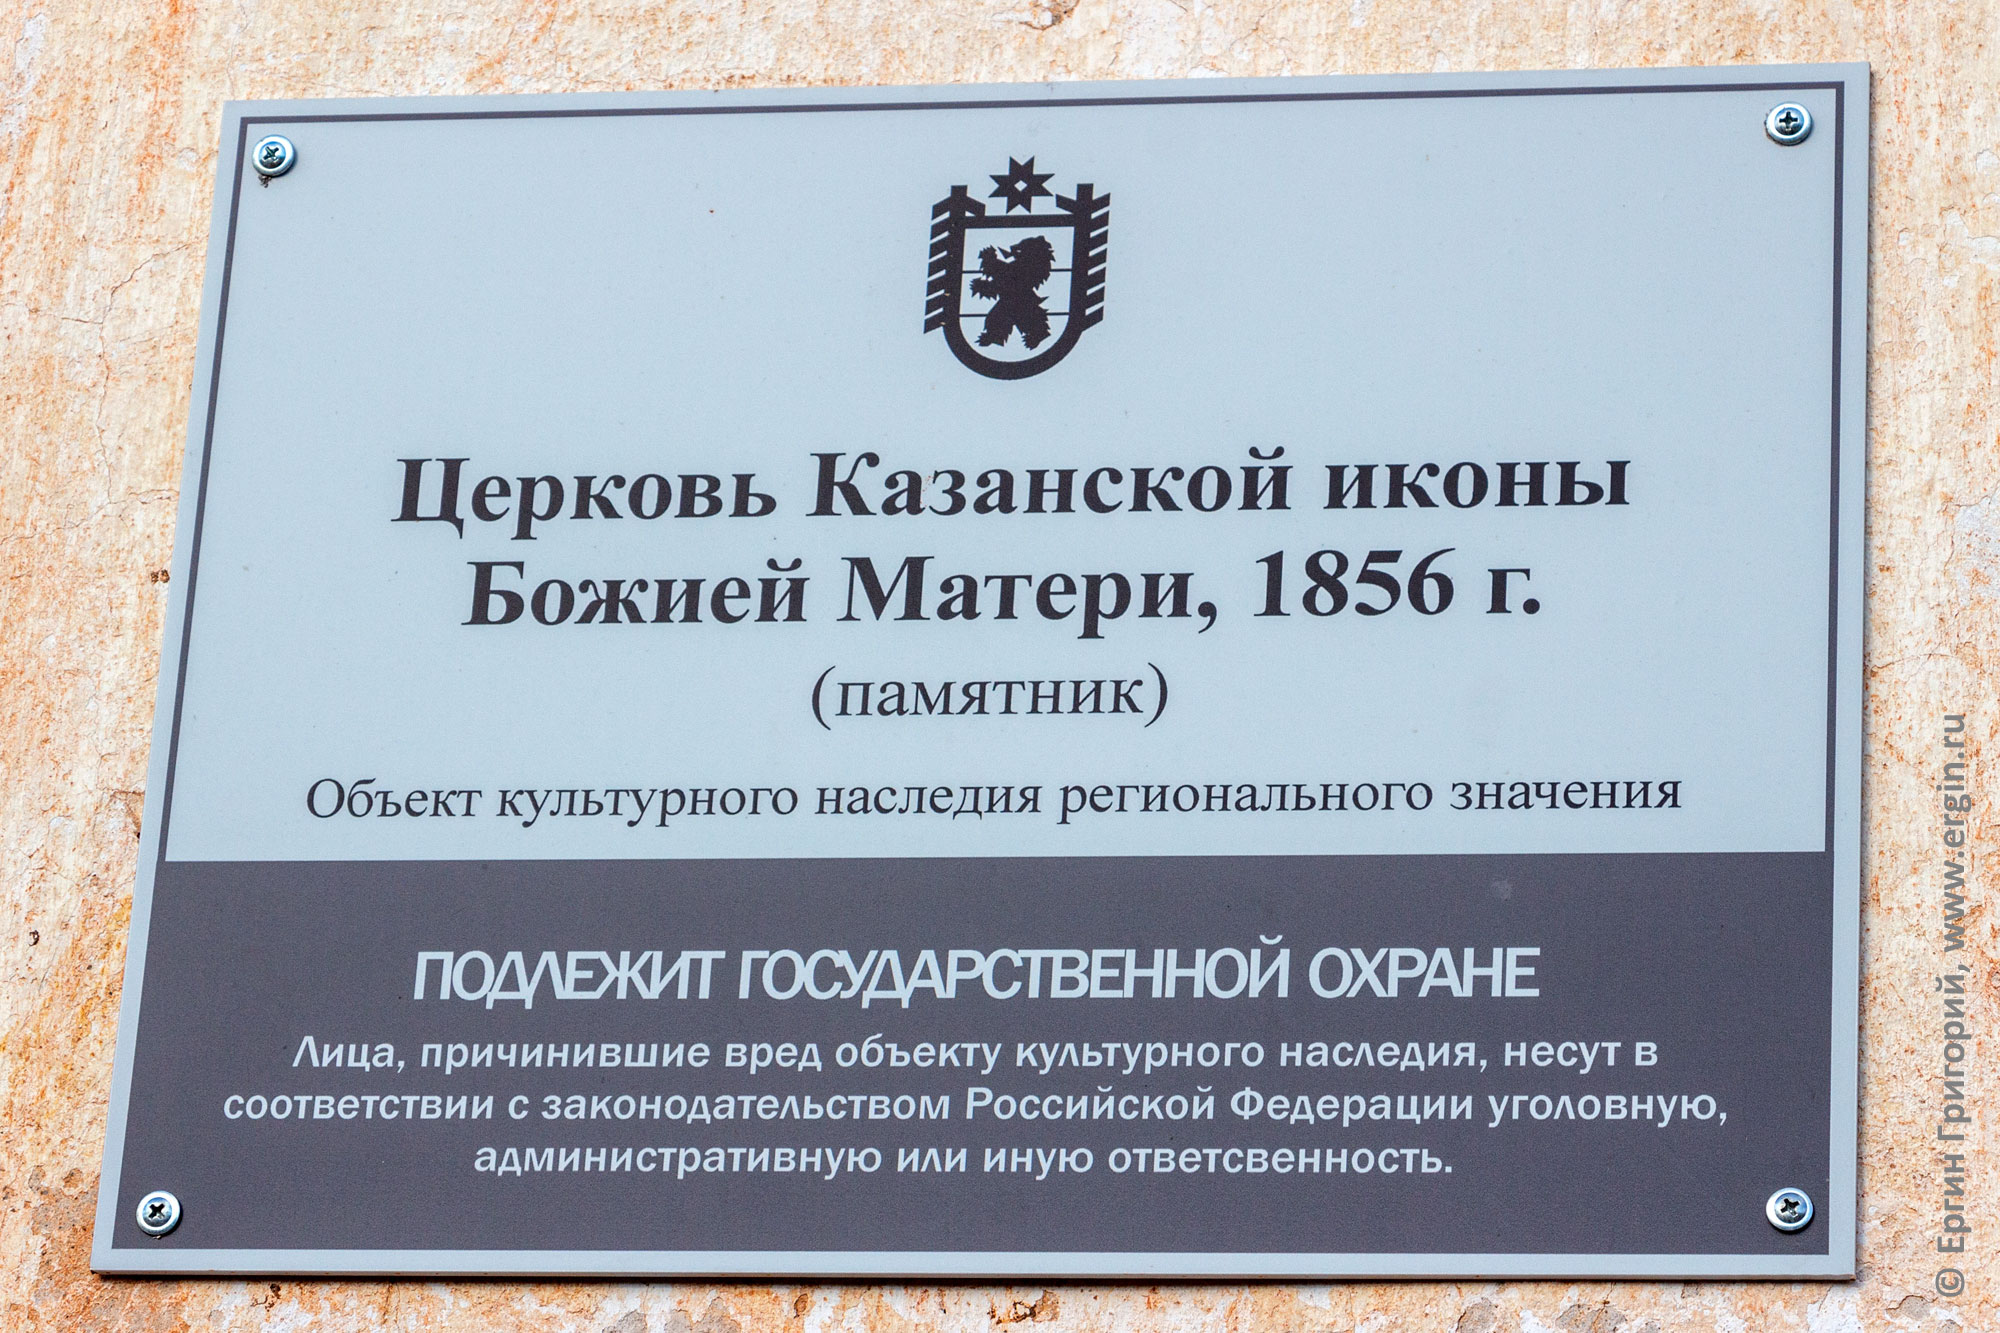 Табличка на церкви Казанской иконы Божией Матери, 1856 г. в Белой Горе, на берегу Тивдийки